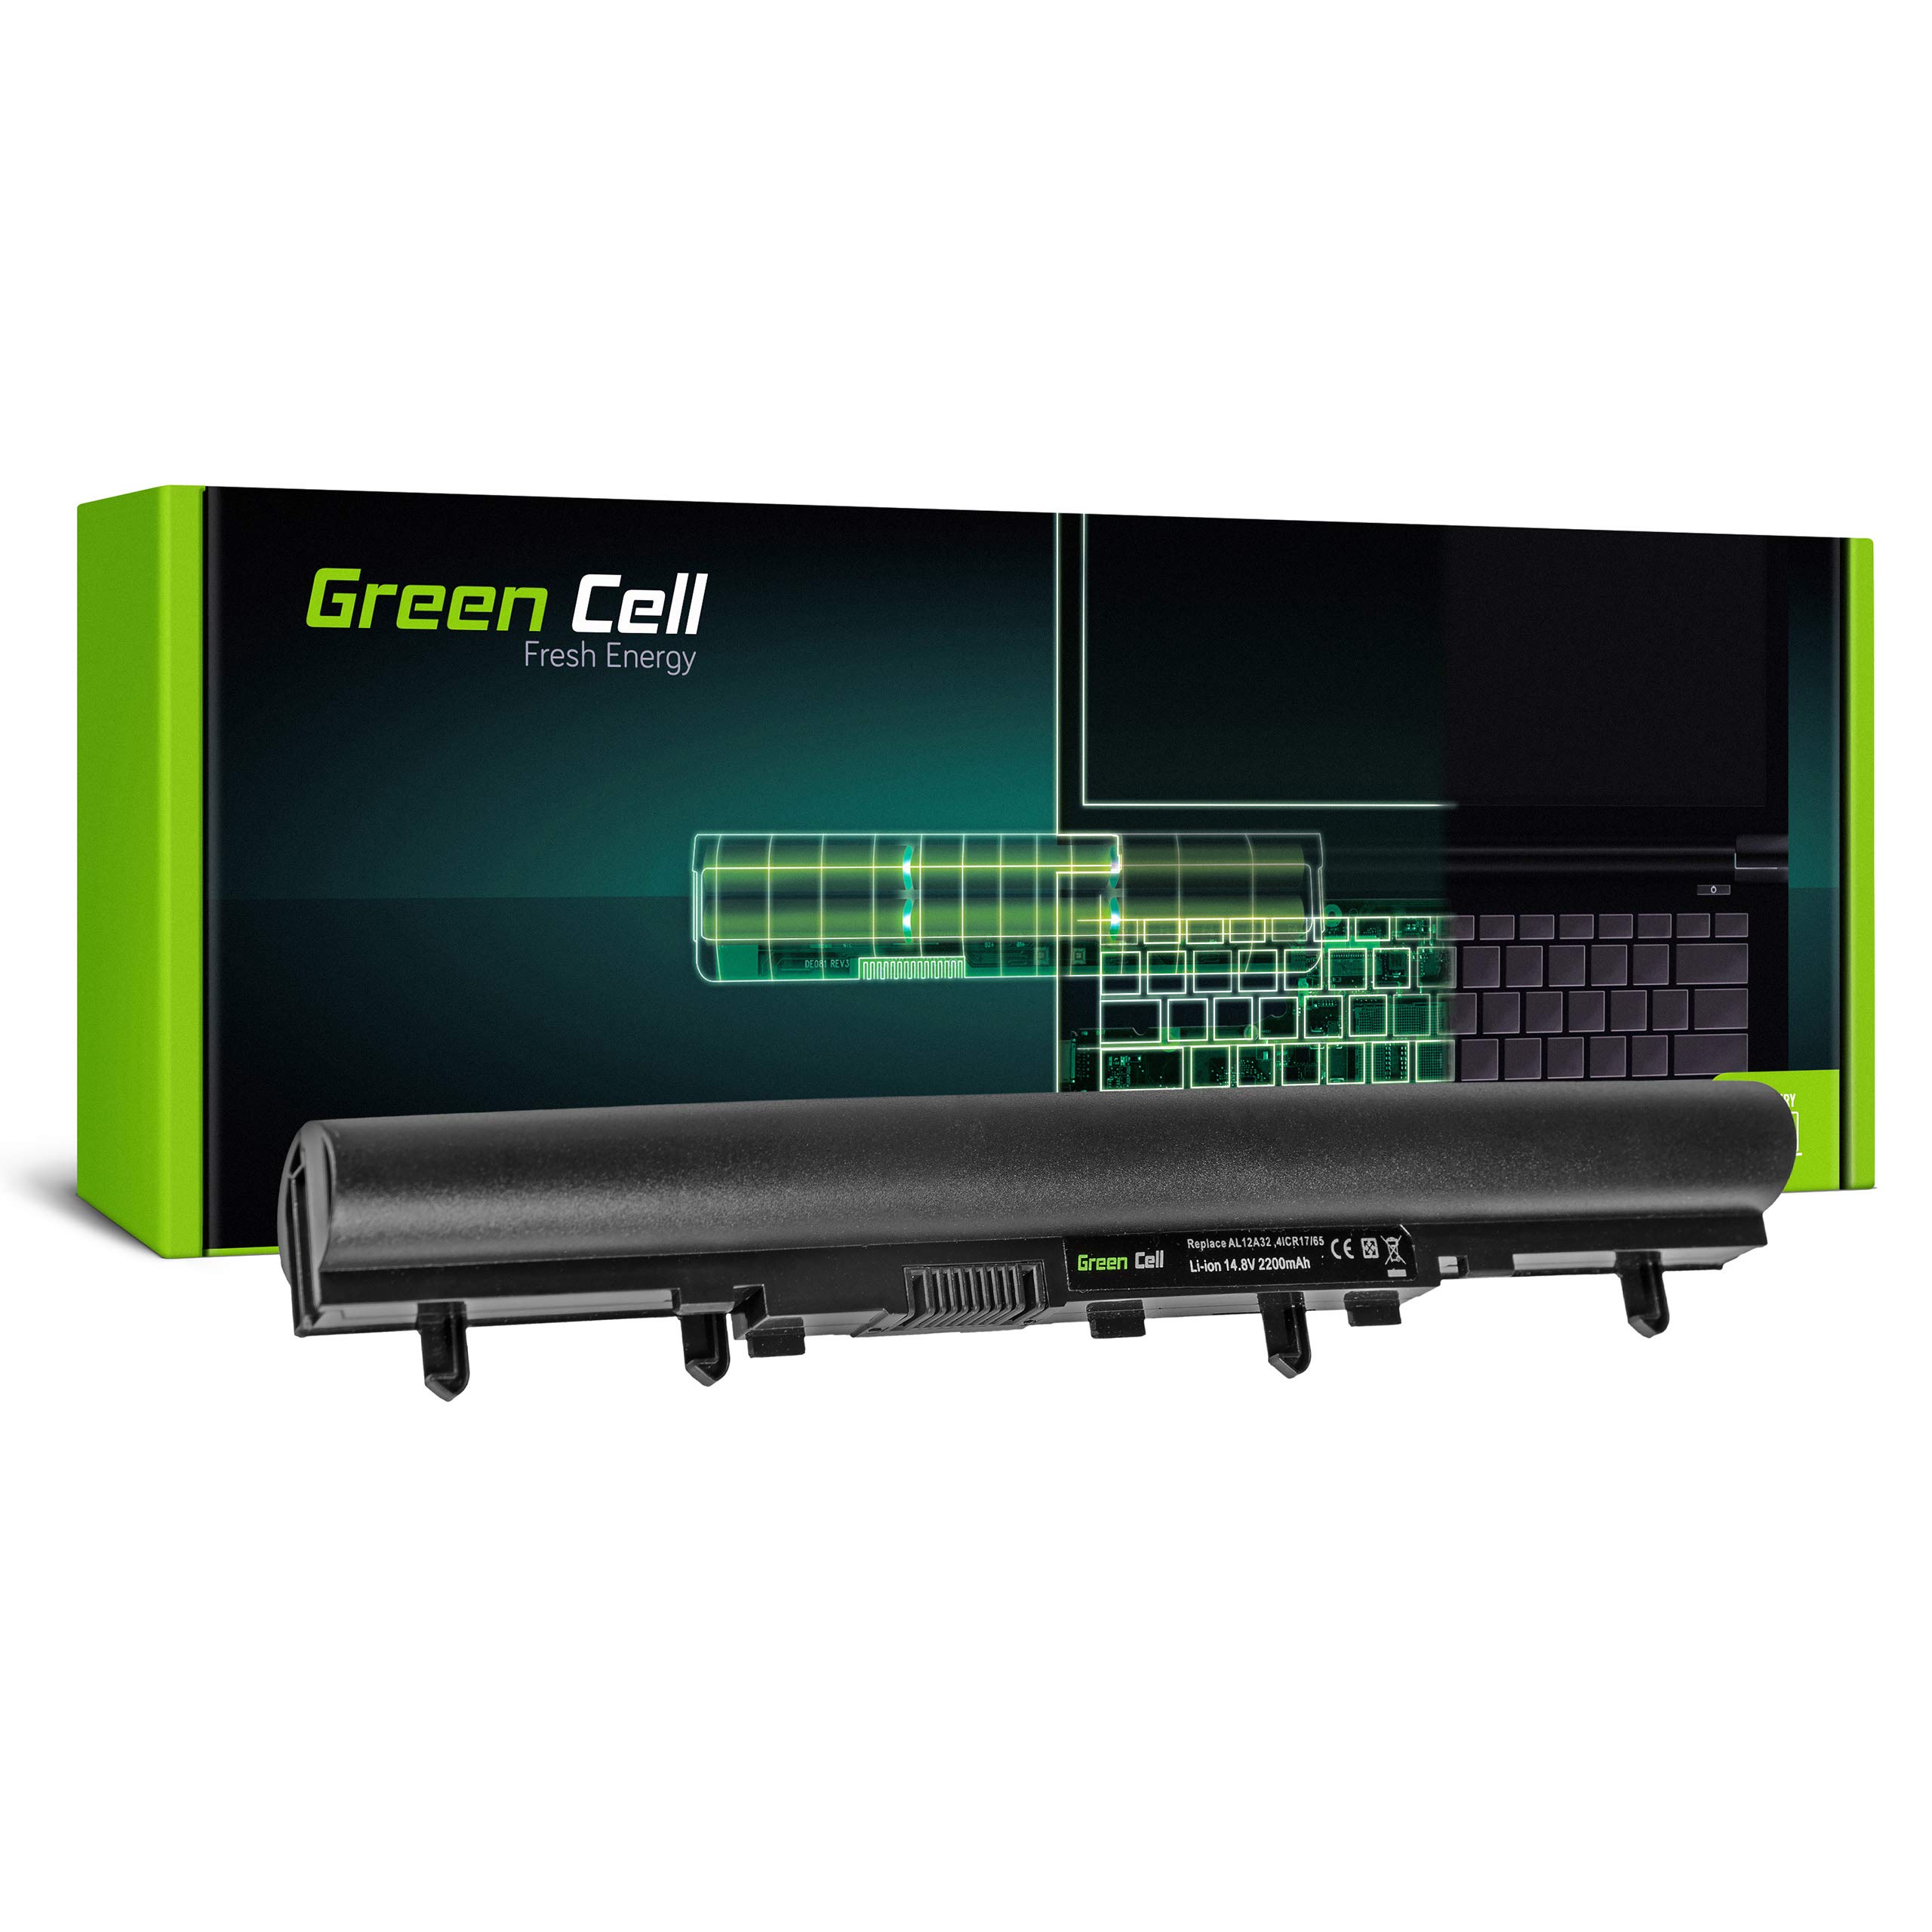 Green Cell AL12A32 AL12A72 Laptop Akku für Acer Aspire E1-570 E1-570G E1-572 E1-572G V5-571 E1-510 E1-510P E1-522 E1-530 E1-530G E1-532 V5-431 V5-531 V5-551 V5-551G V5-561 V5-561G V5-571G